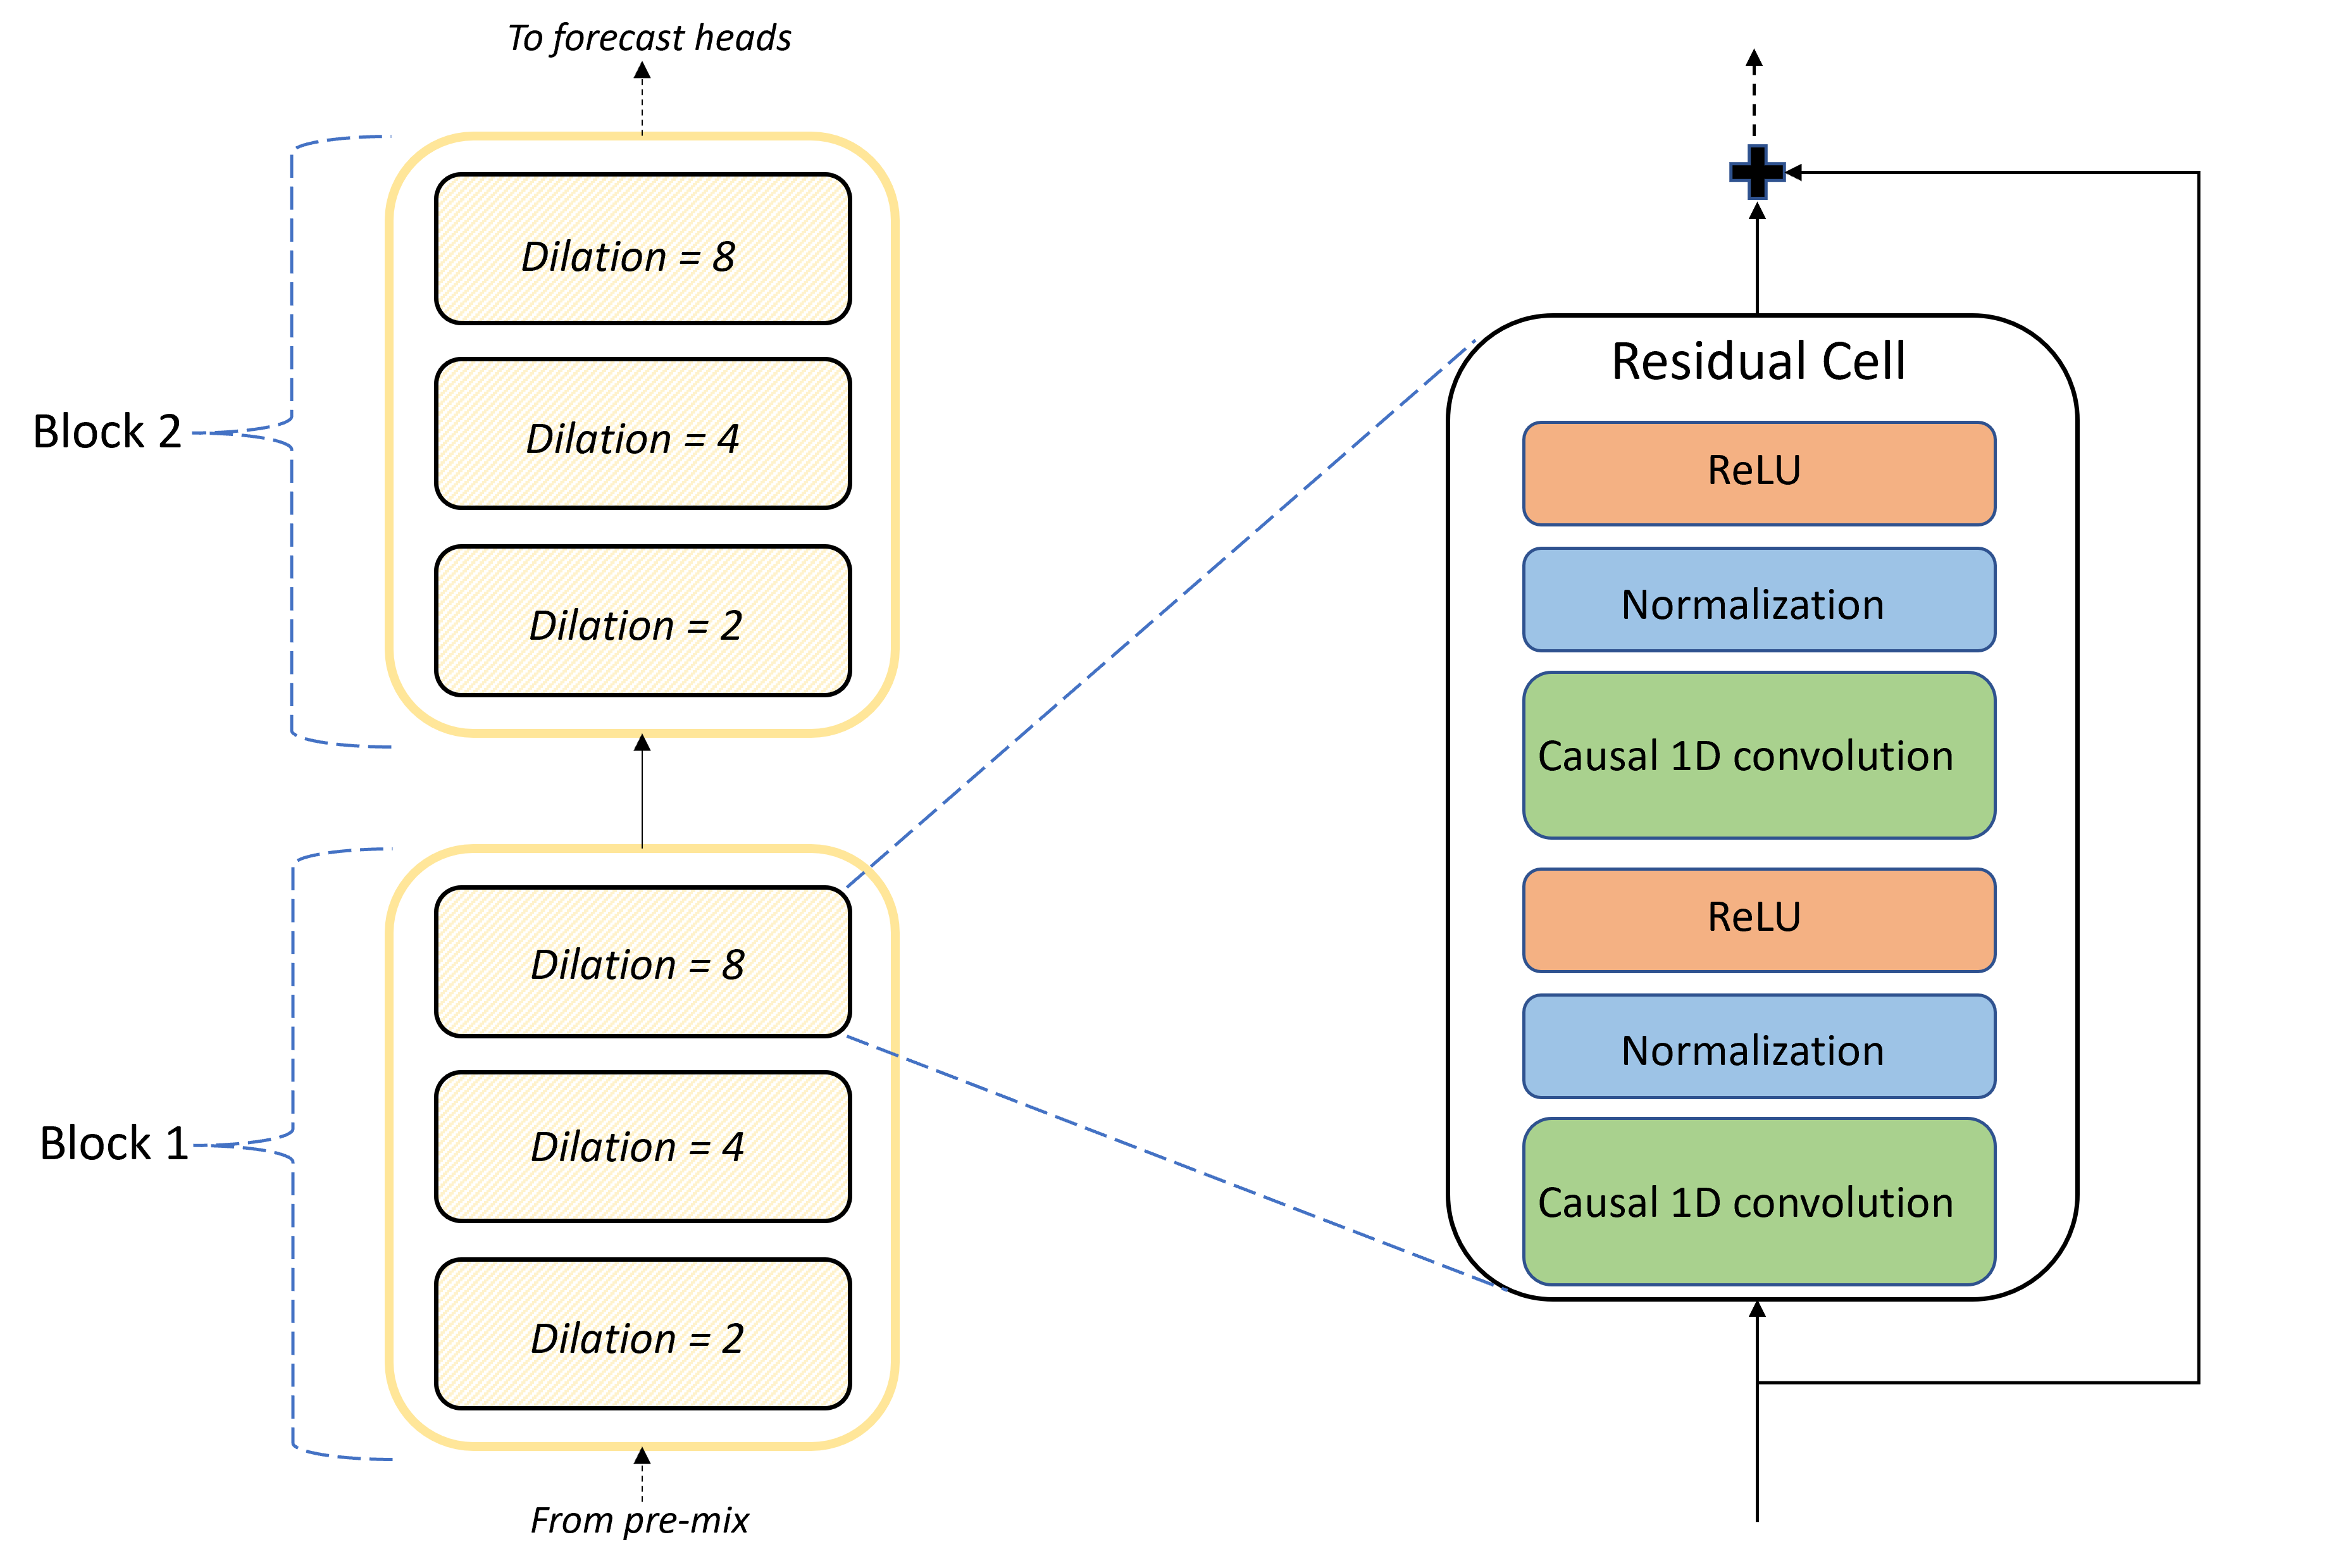 رسم تخطيطي يوضح بنية الكتلة والخلية للطبقات الالتفافية ل TCNForecaster.